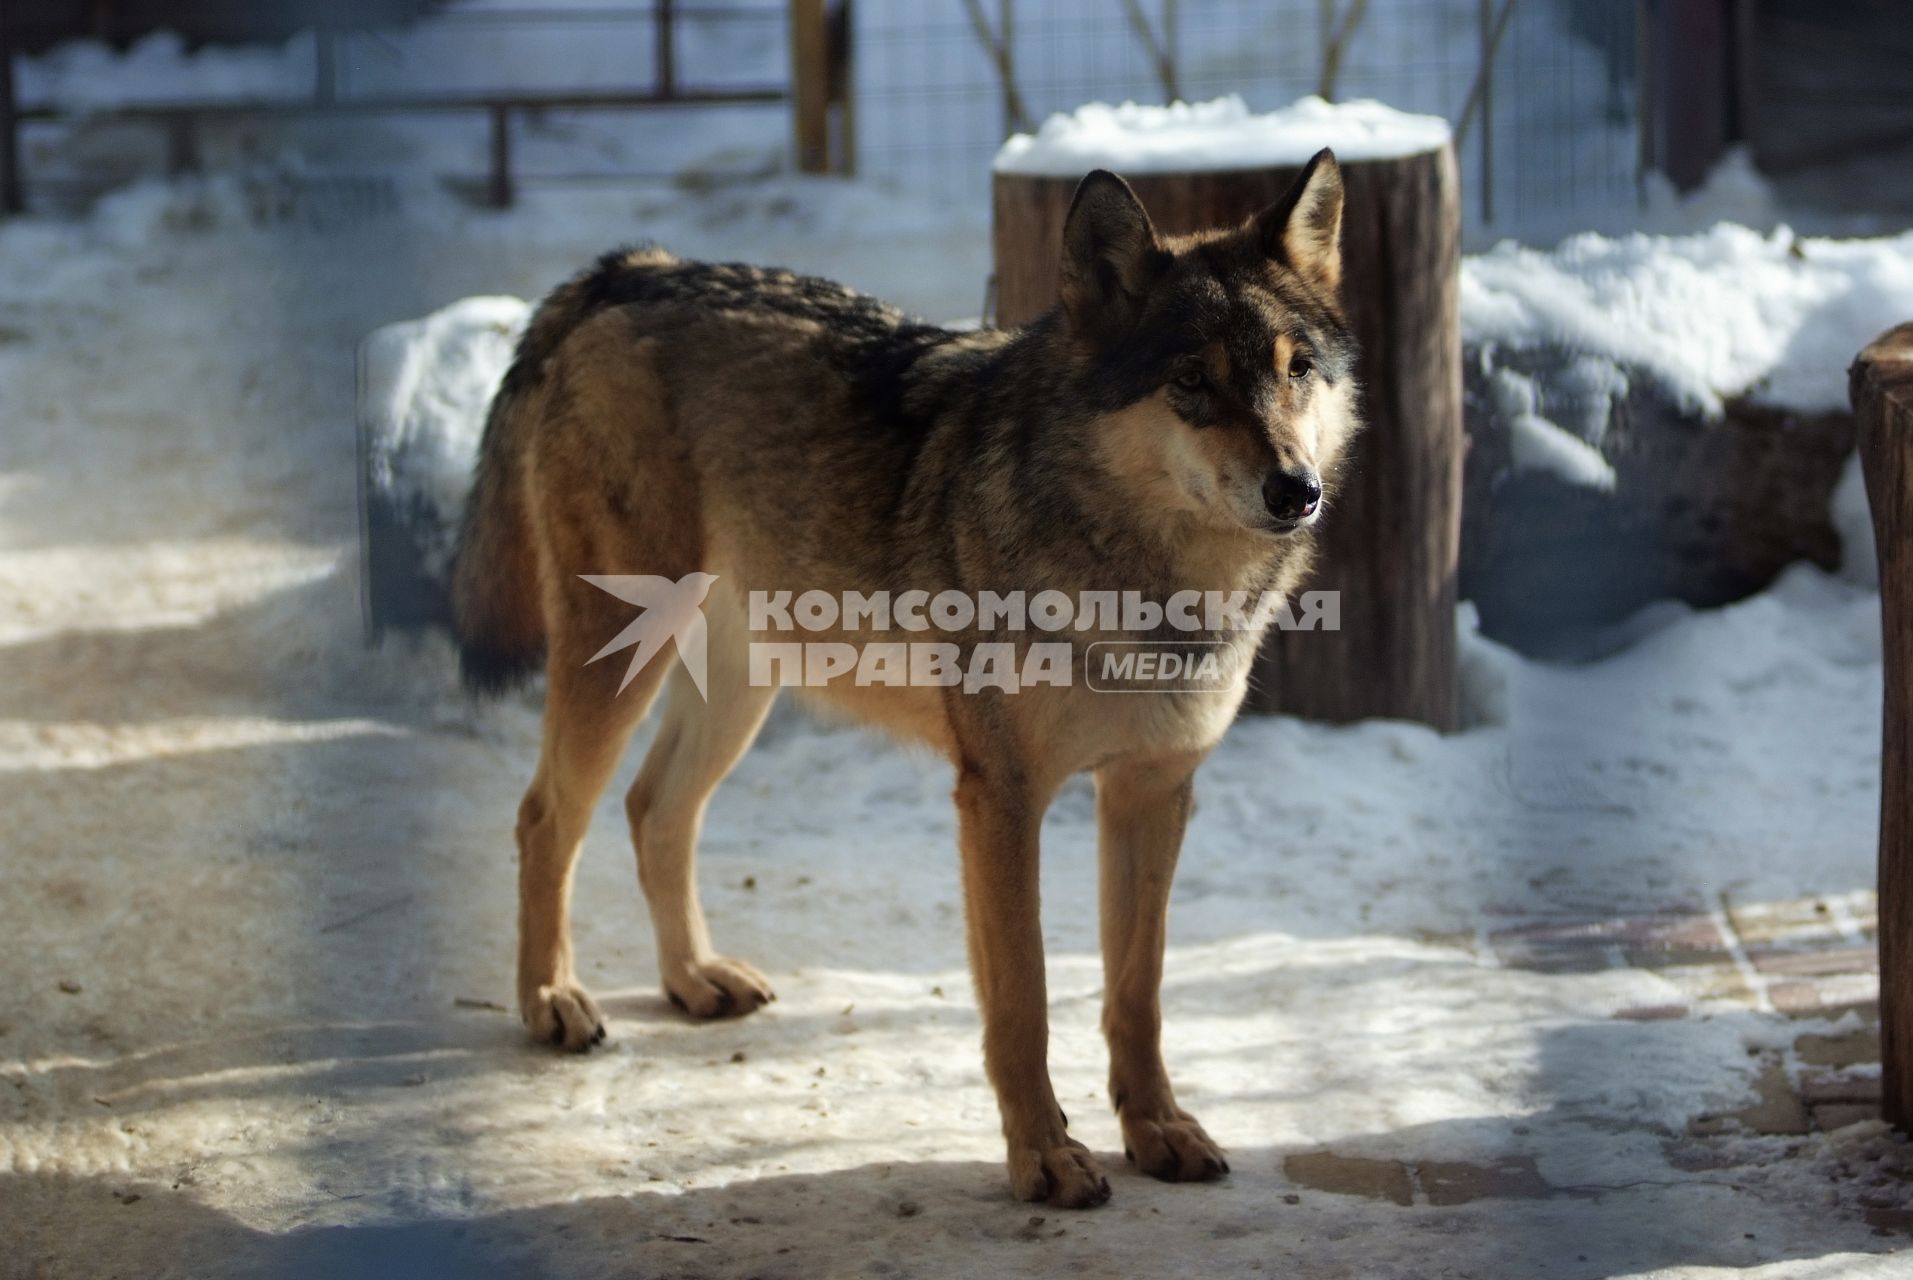 Волк в зоопарке, г. Ставрополь, 18 ноября 2011 года.